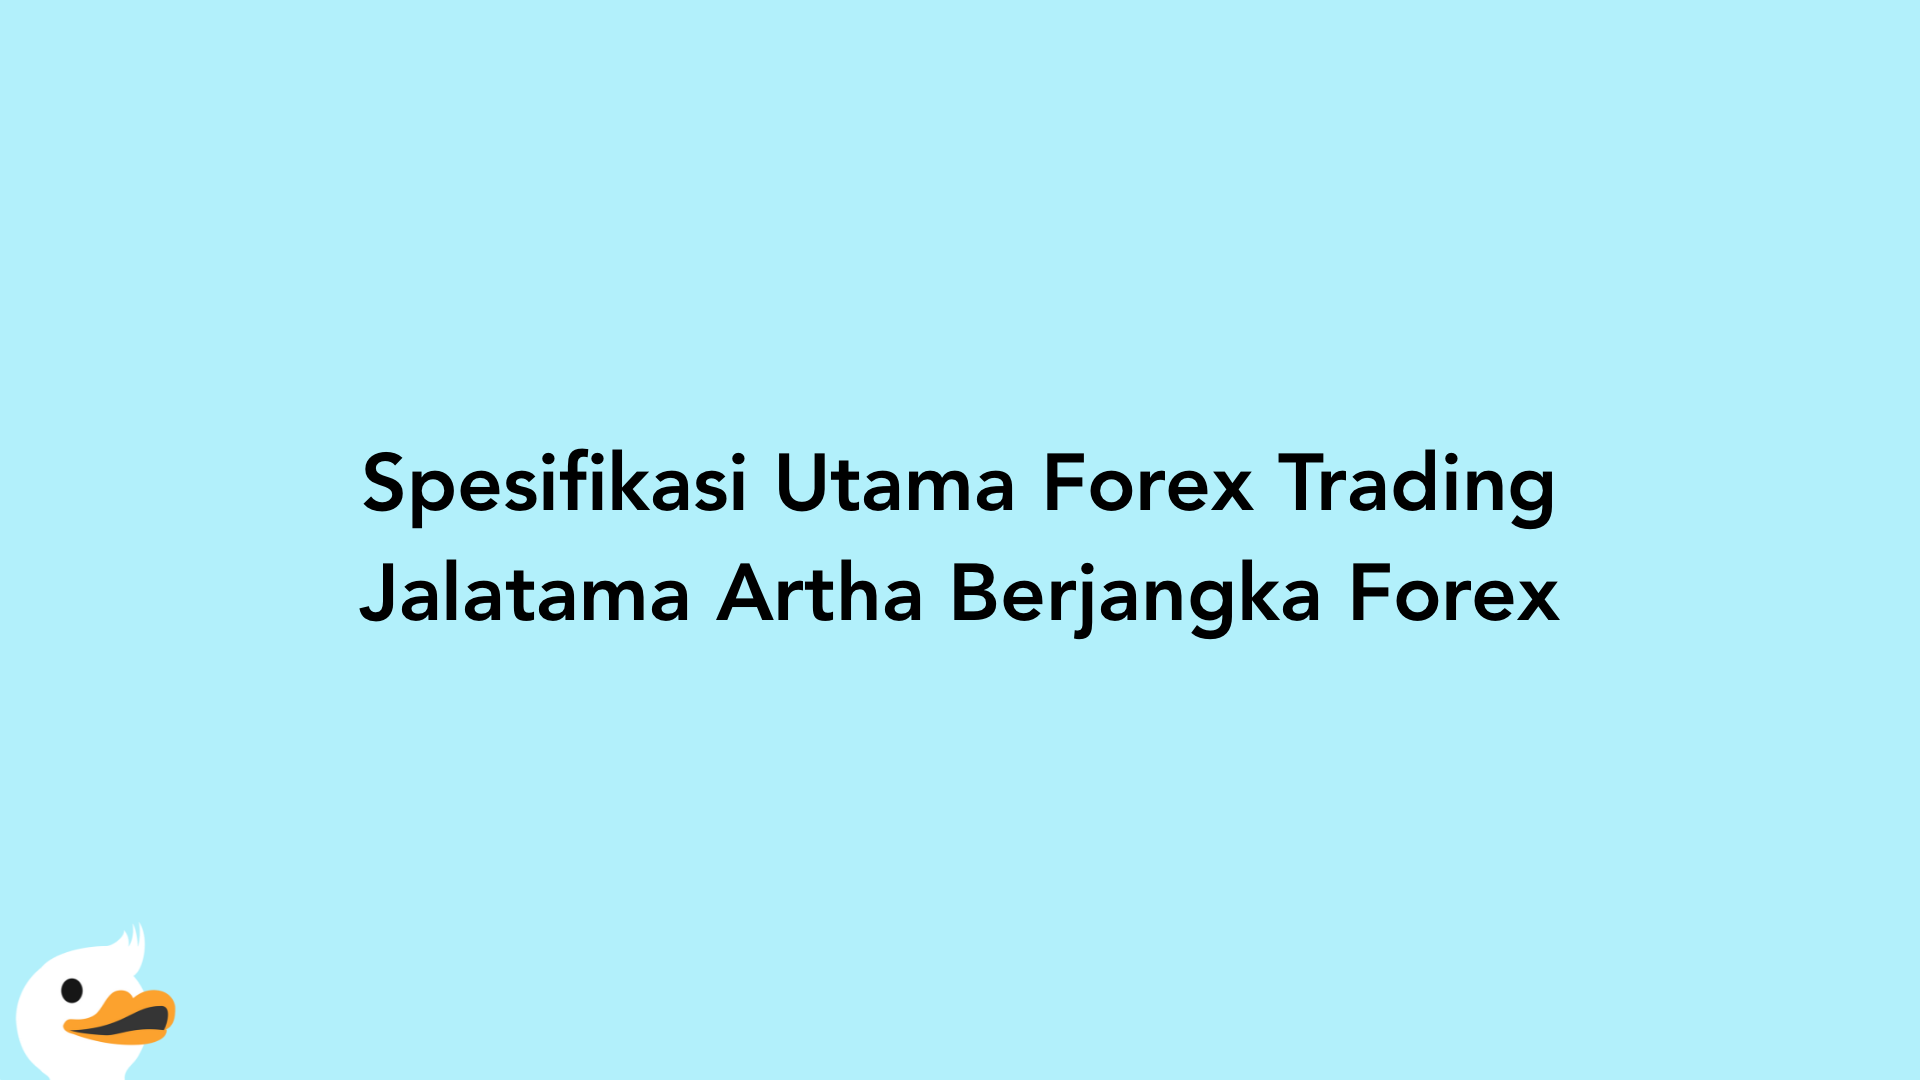 Spesifikasi Utama Forex Trading Jalatama Artha Berjangka Forex